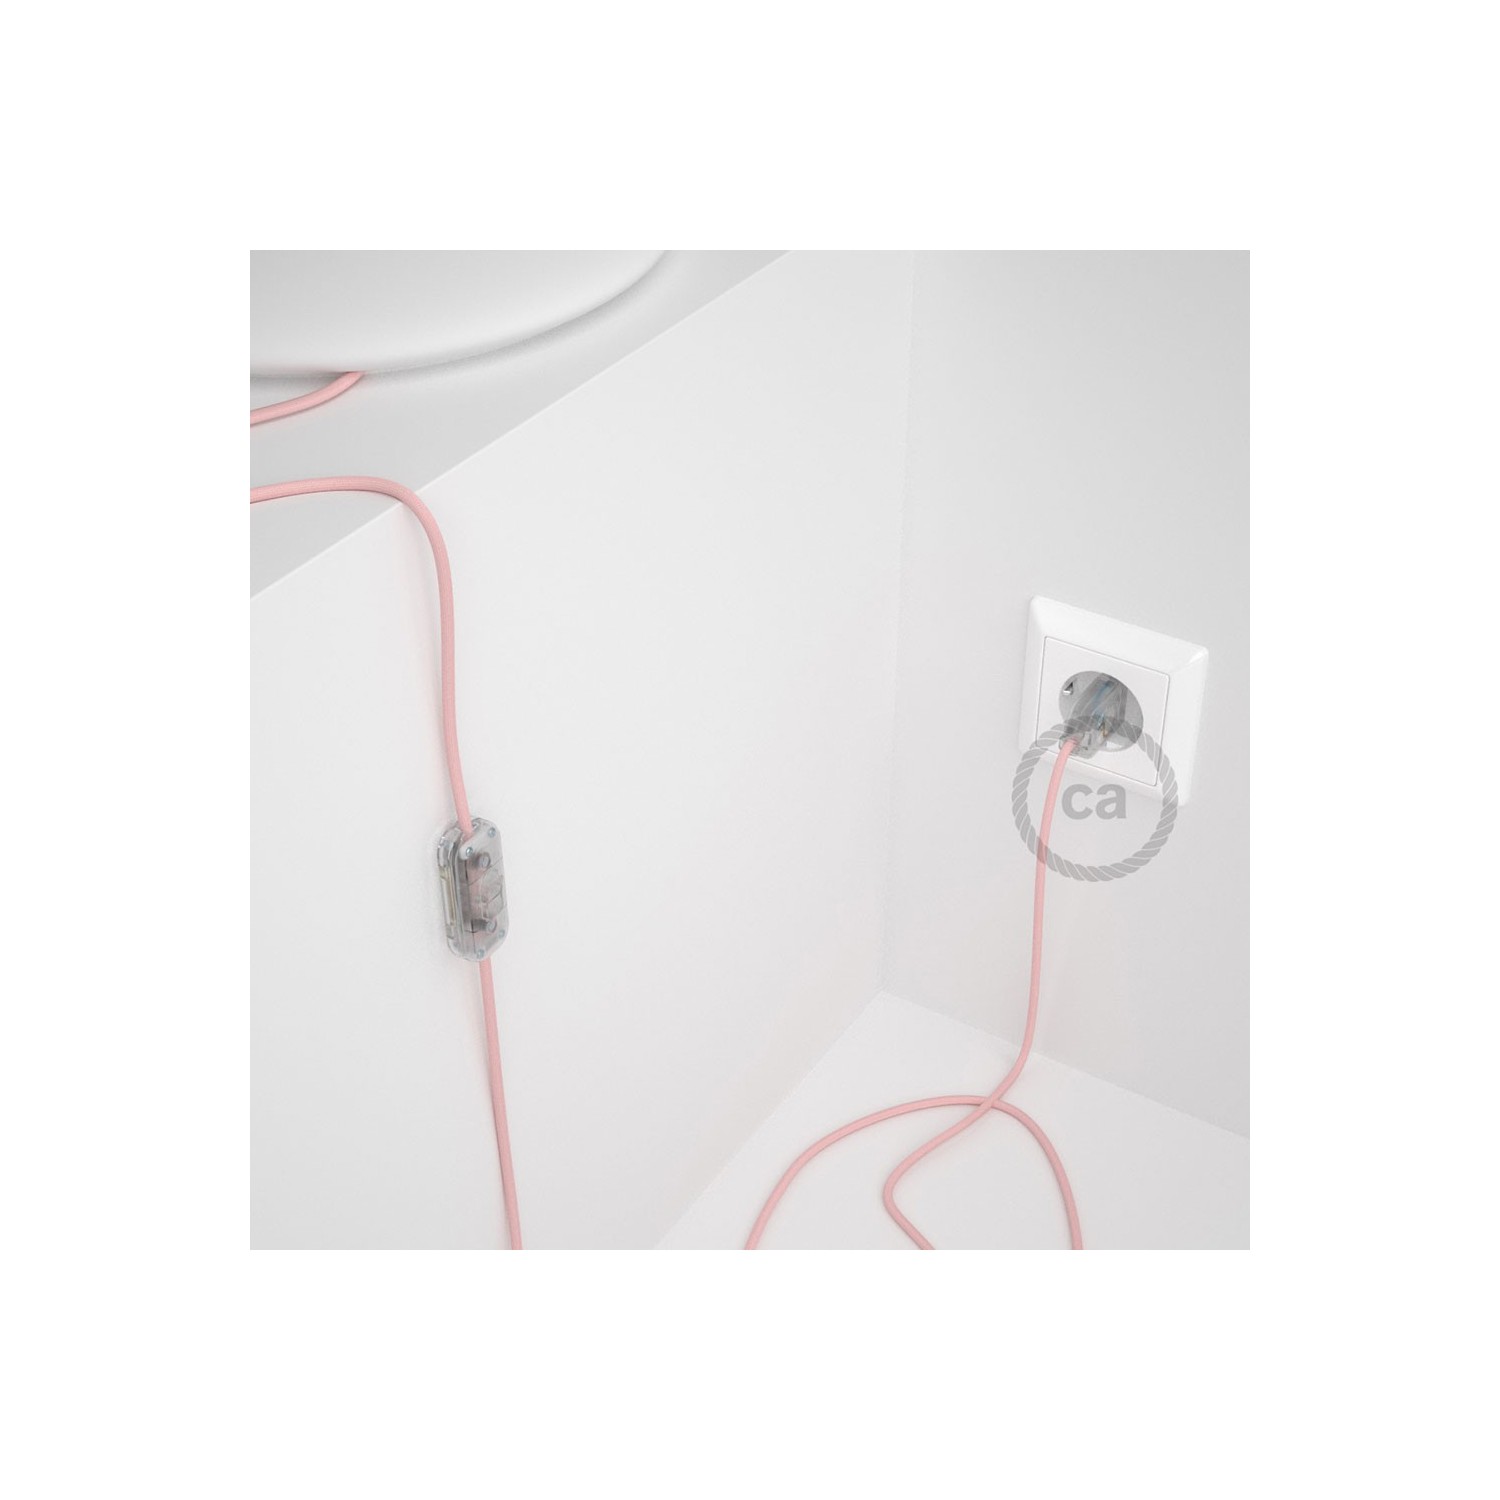 Cablaggio per lampada, cavo RM16 Effetto Seta Rosa Baby 1,80 m. Scegli il colore dell'interruttore e della spina.